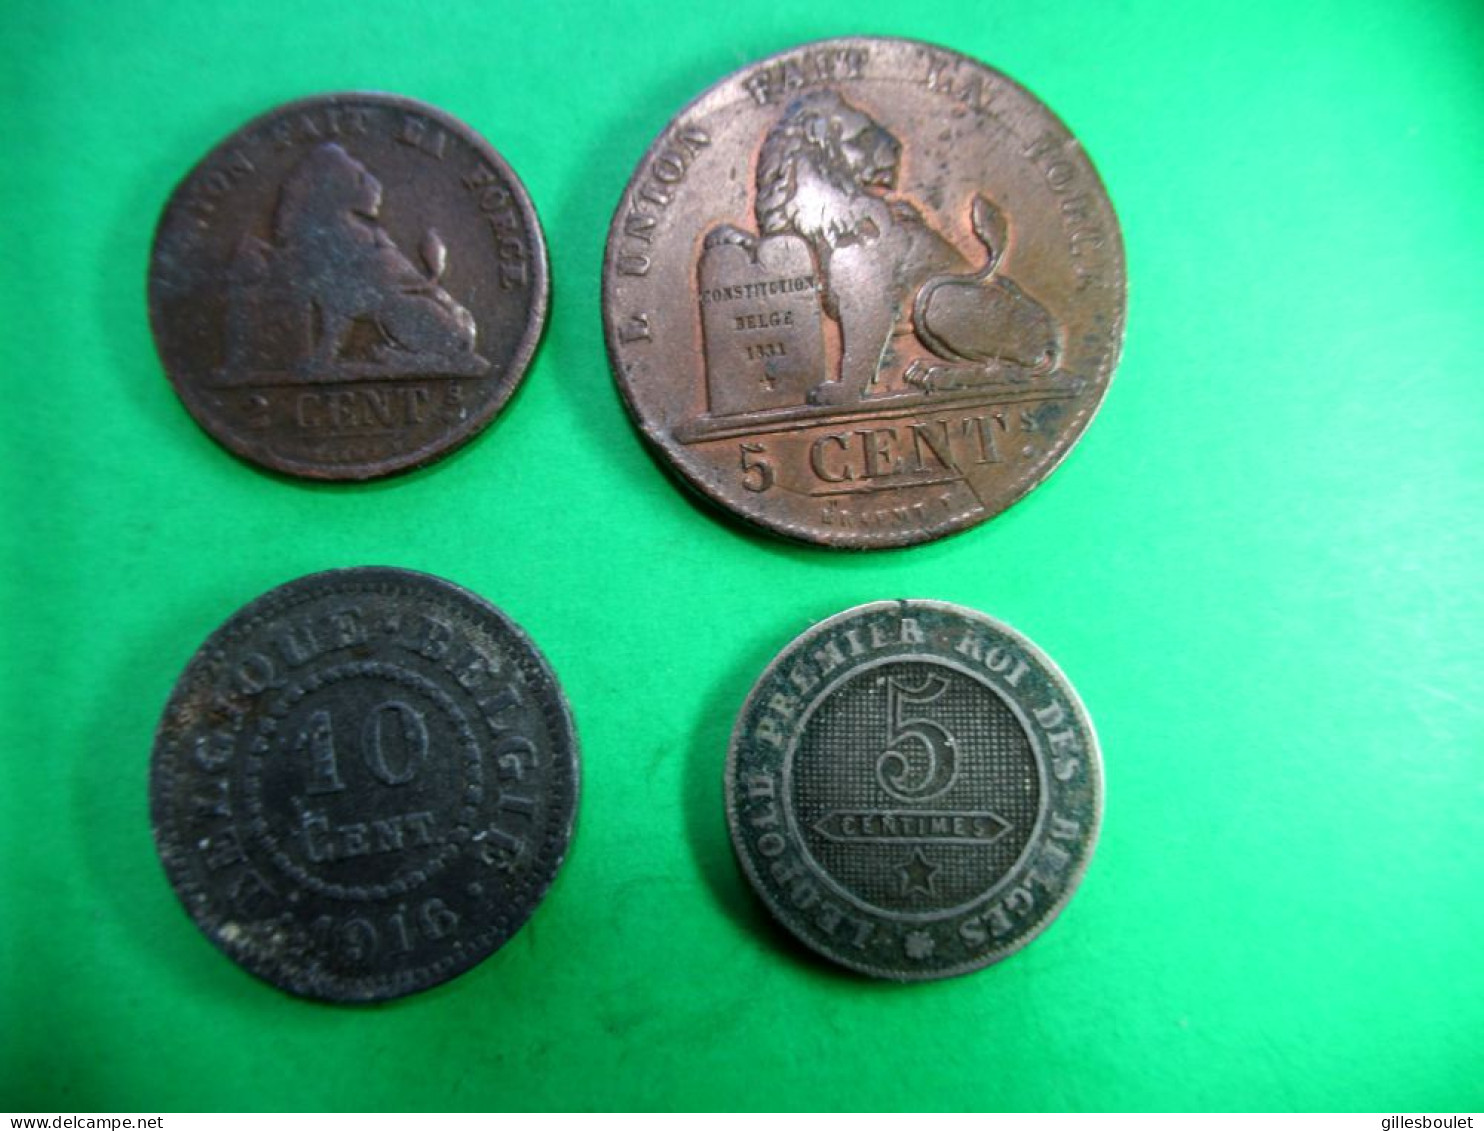 4 Belles Belges. 5 Centimes 1837 Et 1862. 2 Centimes 1876 Et 10 Centimes 1916. Toutes Belles. - 5 Cent